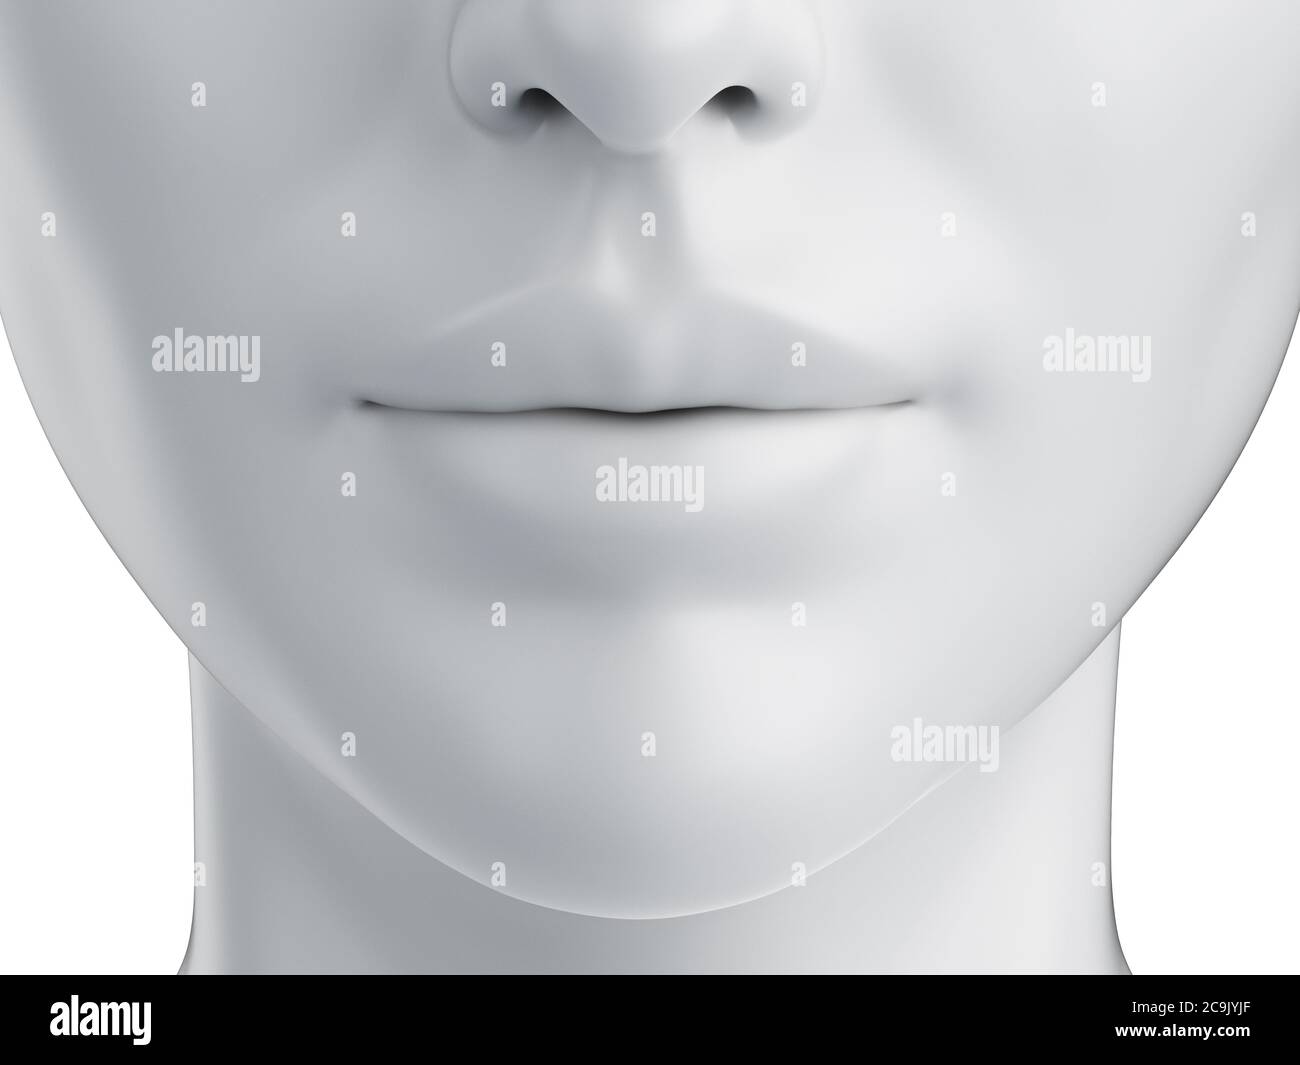 Female mouth, illustration. Stock Photo